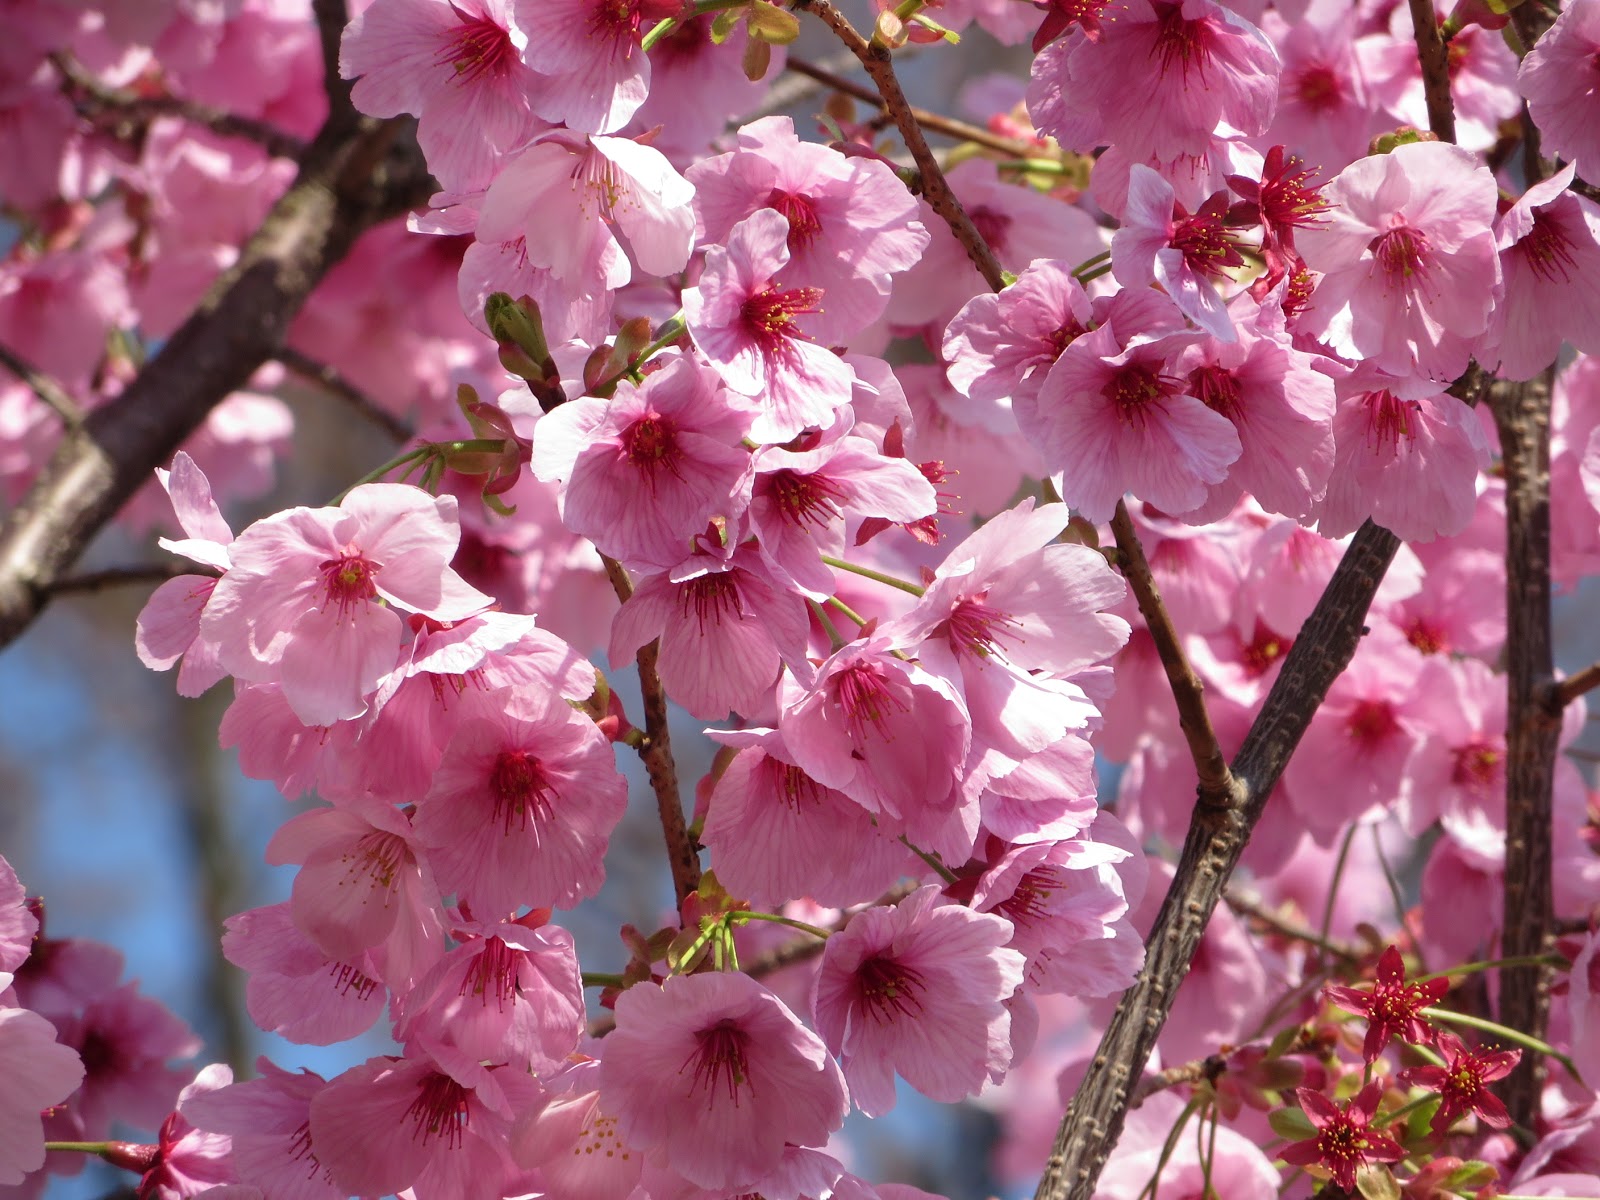 福岡市植物園ブログ 緋色の系統 早咲きの桜たち 18 3 21